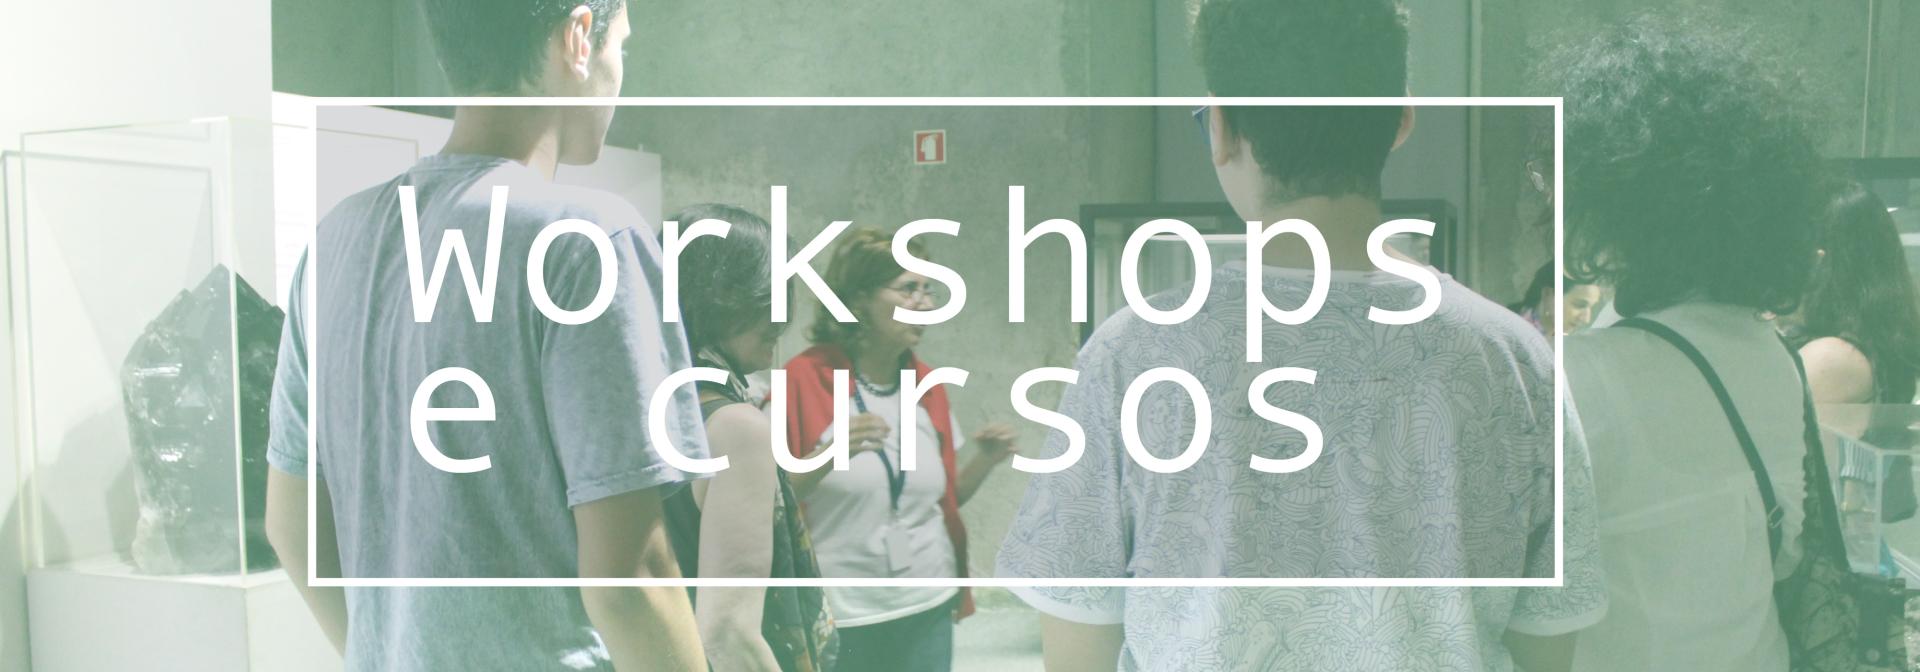 Workshops e Cursos